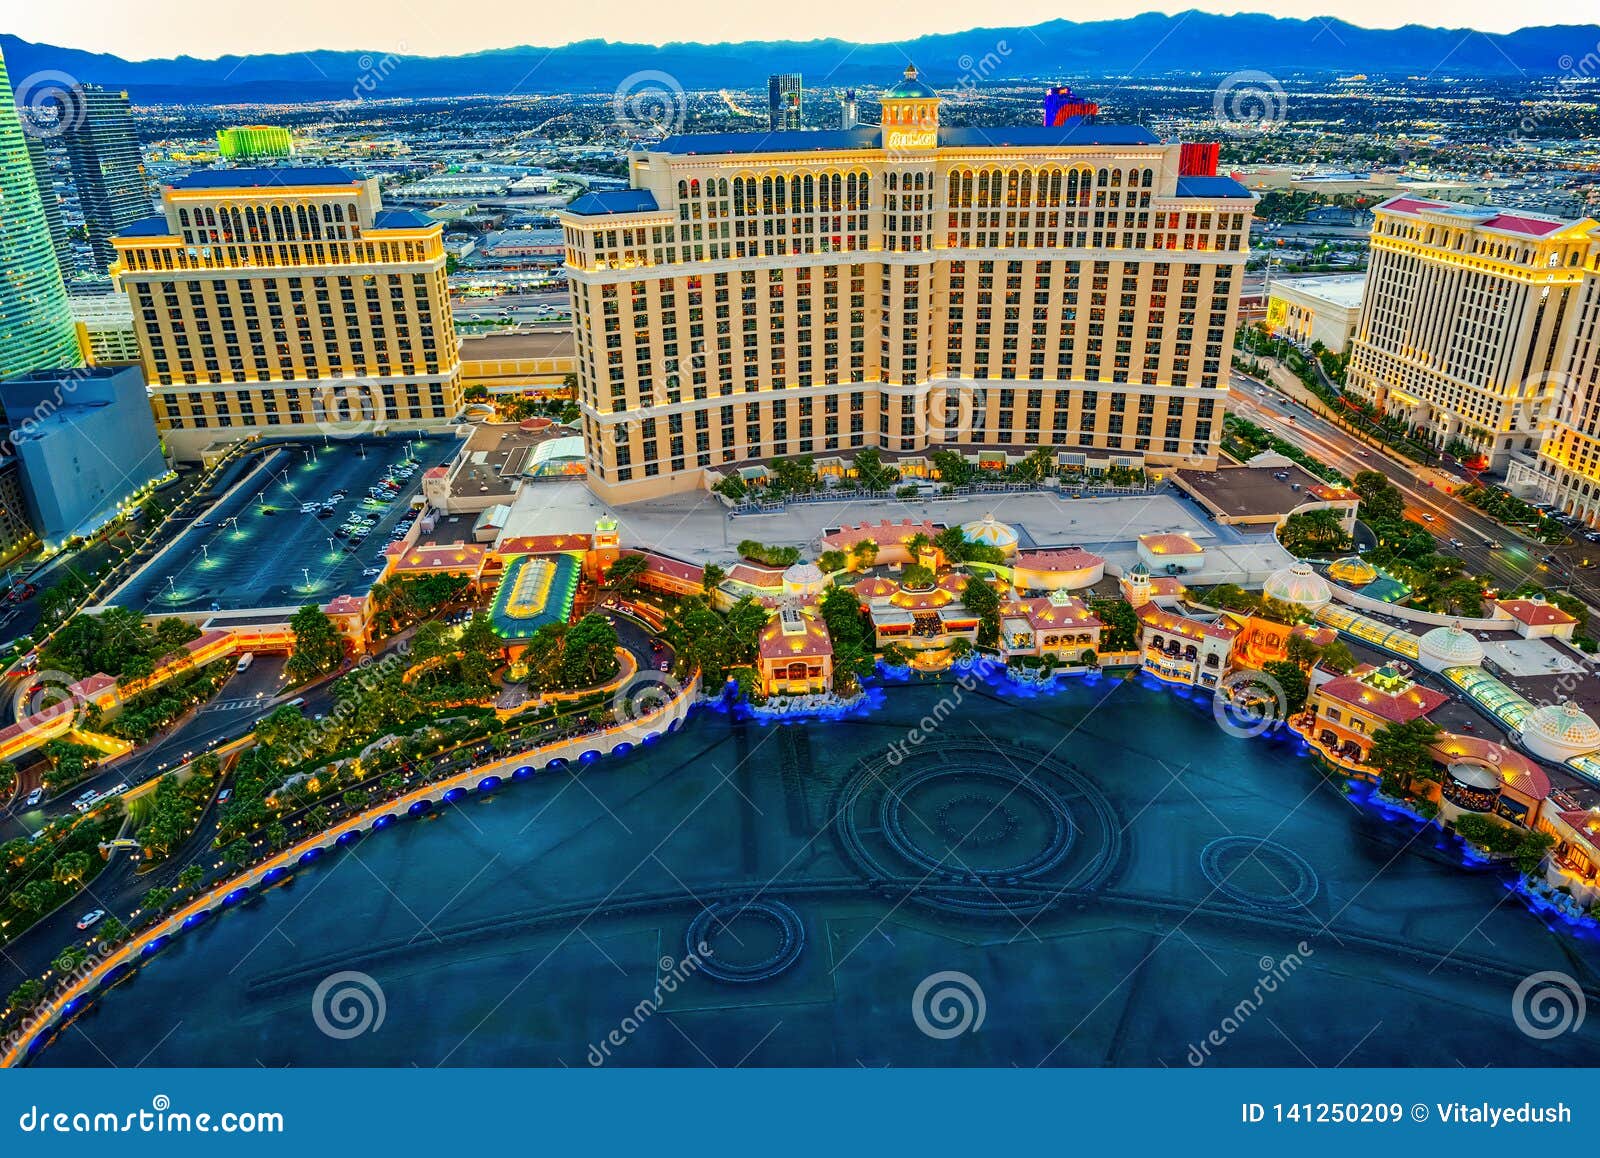 oyente recuerdos parásito 5,981 Casino Bellagio Las Vegas Fotos de stock - Fotos libres de regalías  de Dreamstime